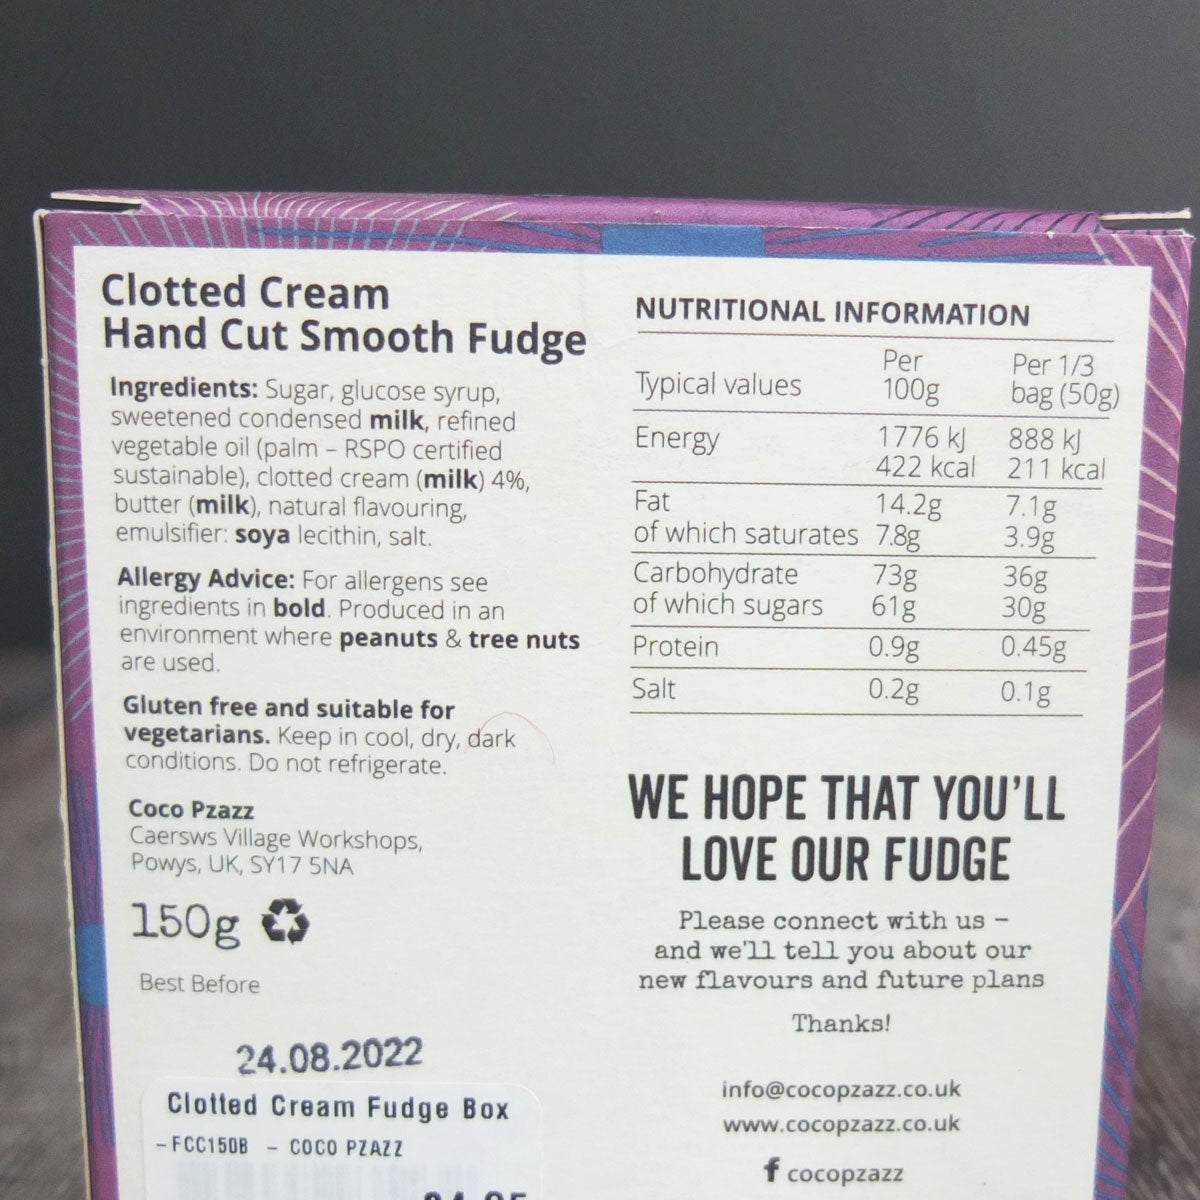 Clotted Cream Fudge Box by Coco Pzazz